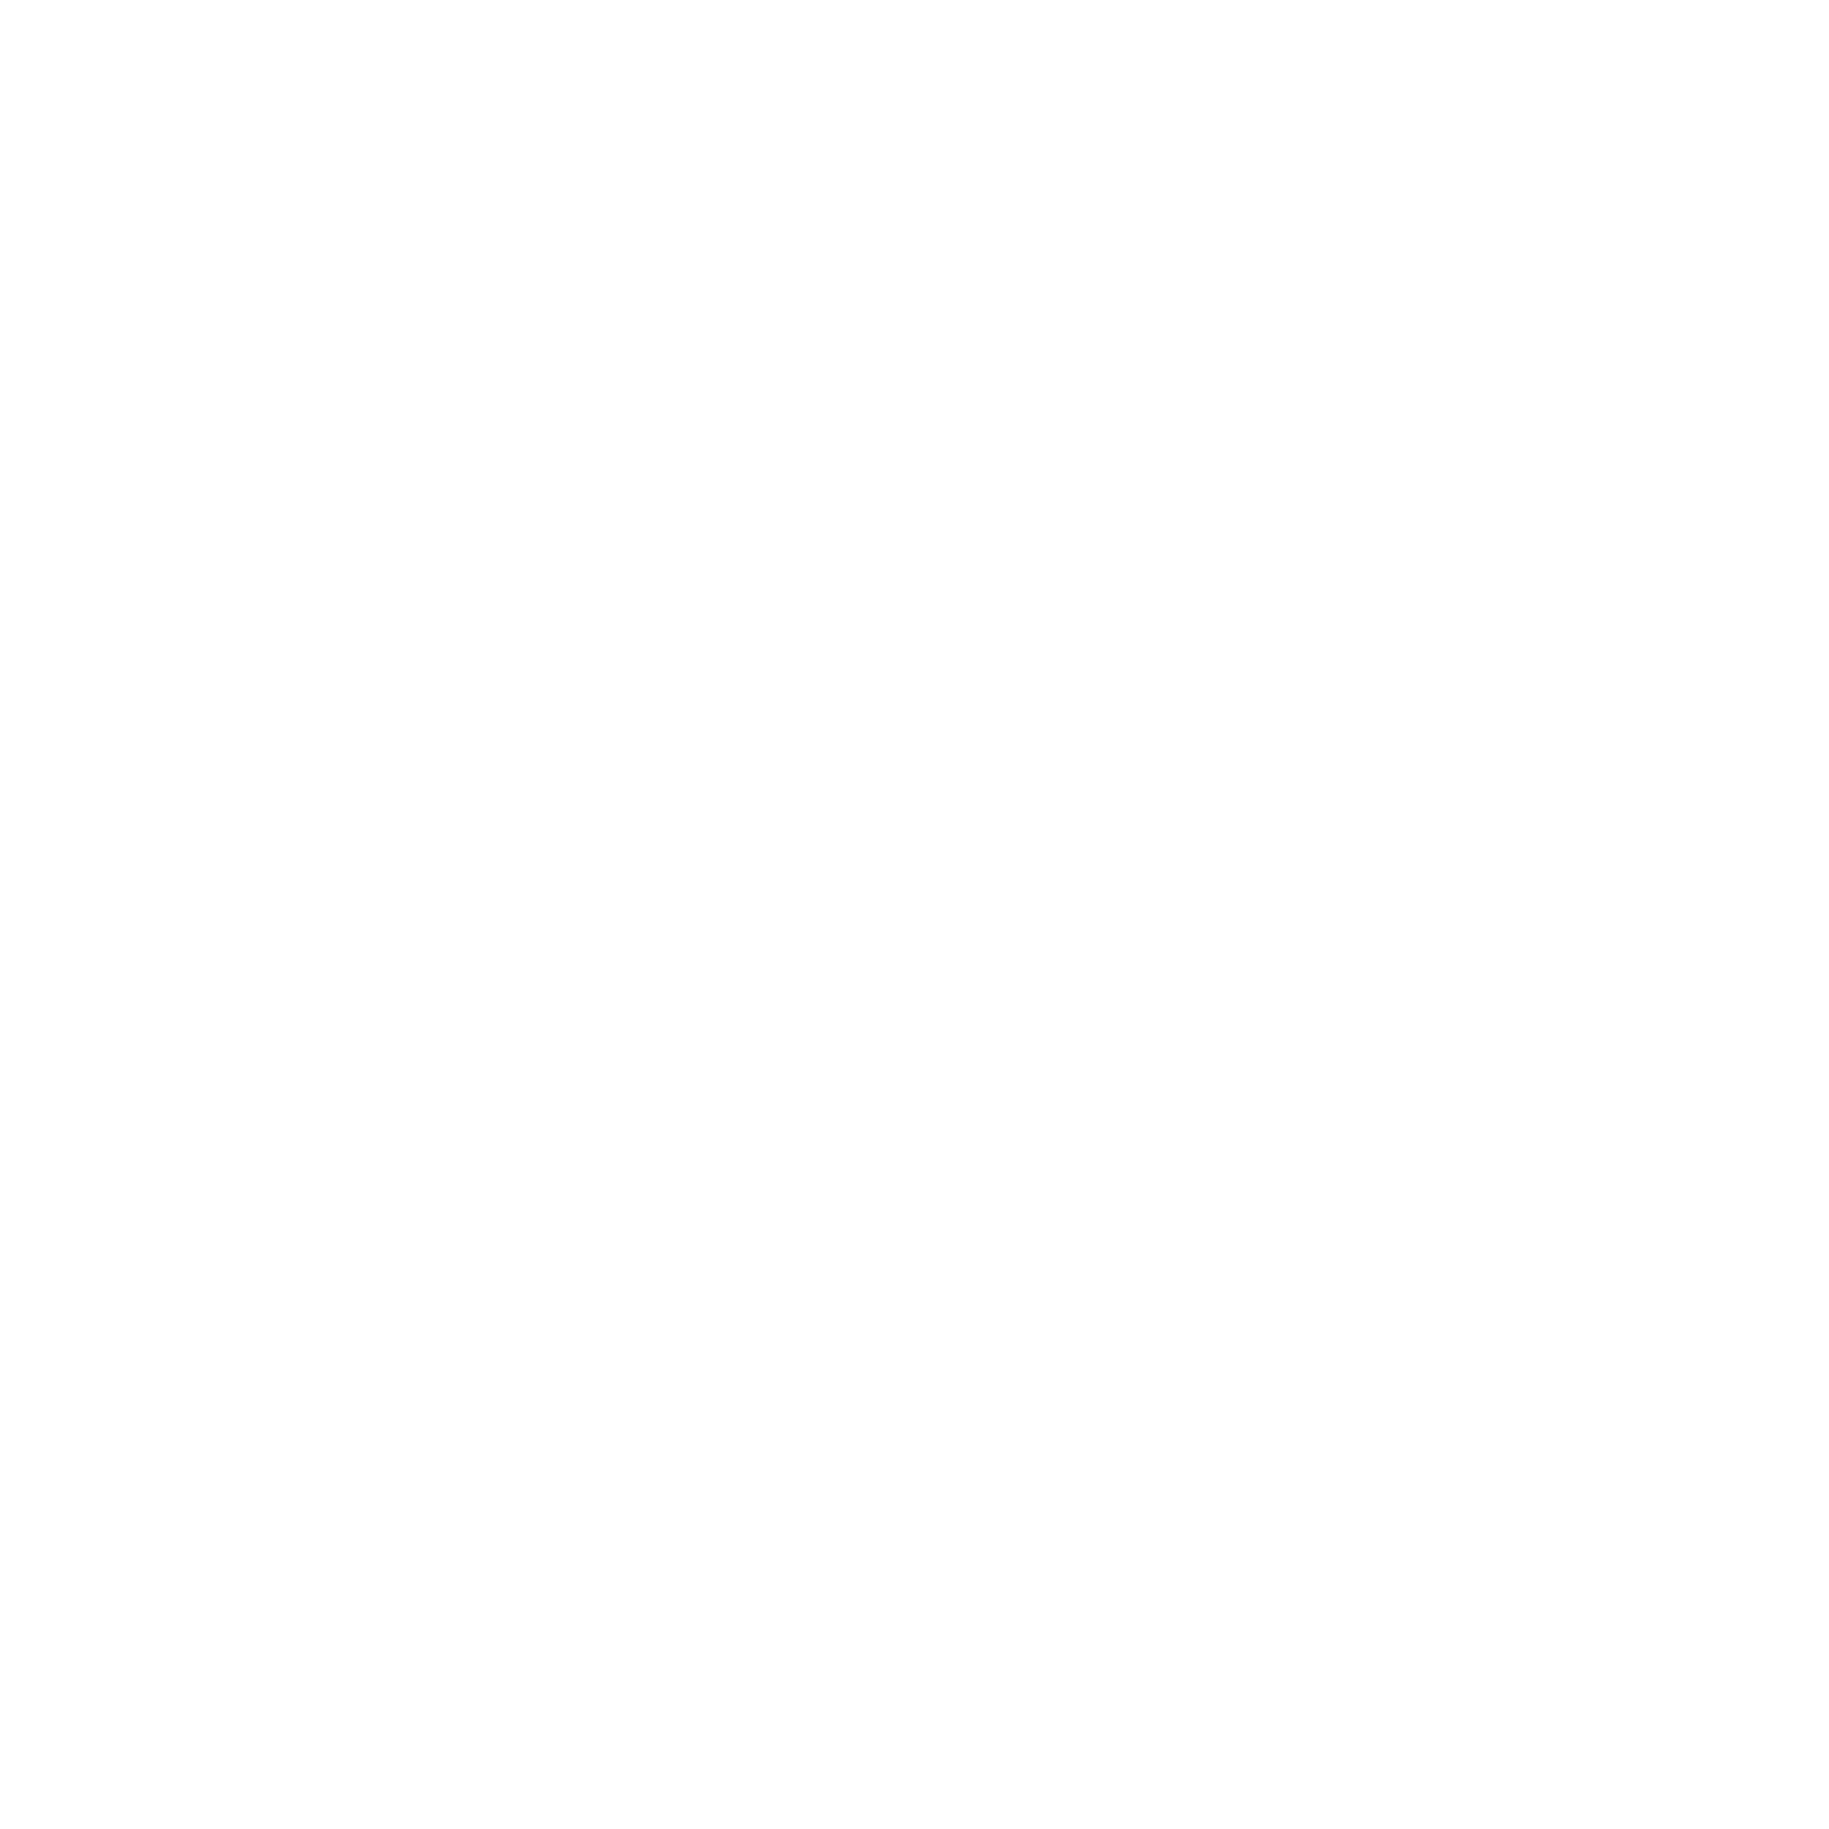 Parma Palatina